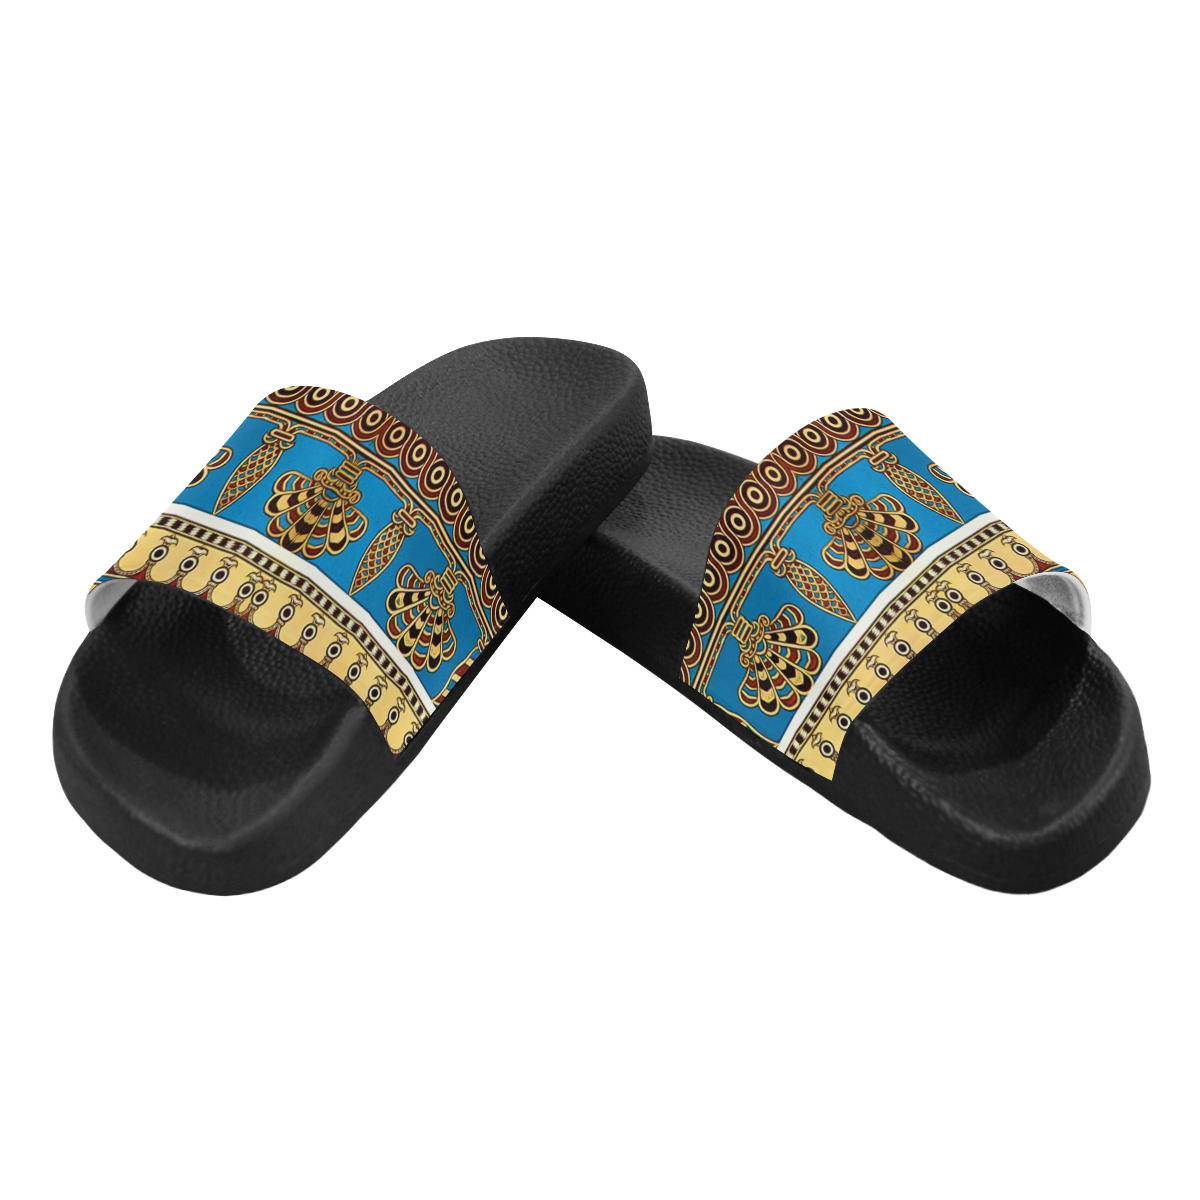 Assyrian Folk Art Women's Slide Sandals (Model 057)